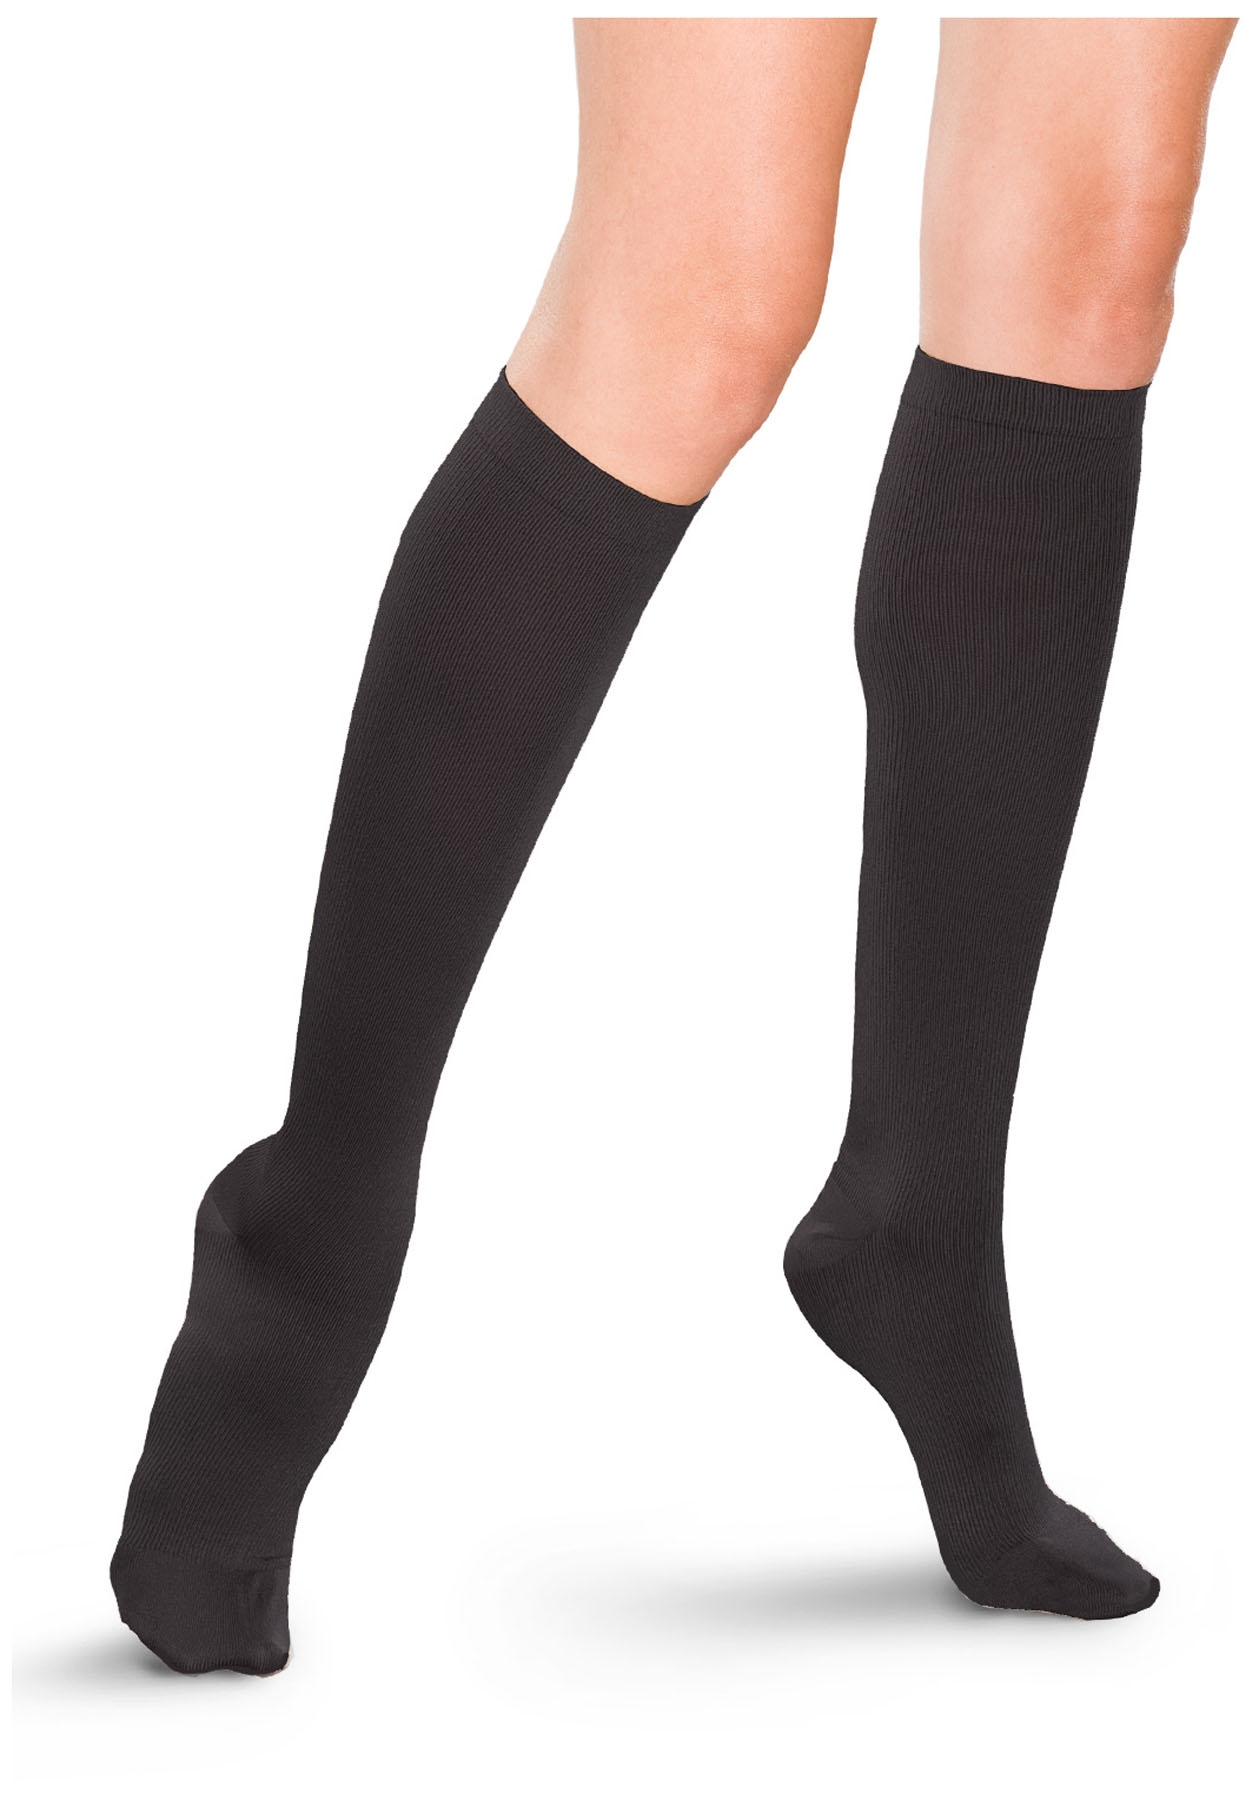 Knee High Socks For Women Trouser Tube Socks Women Knee High Stockings For  Women  Fruugo IN